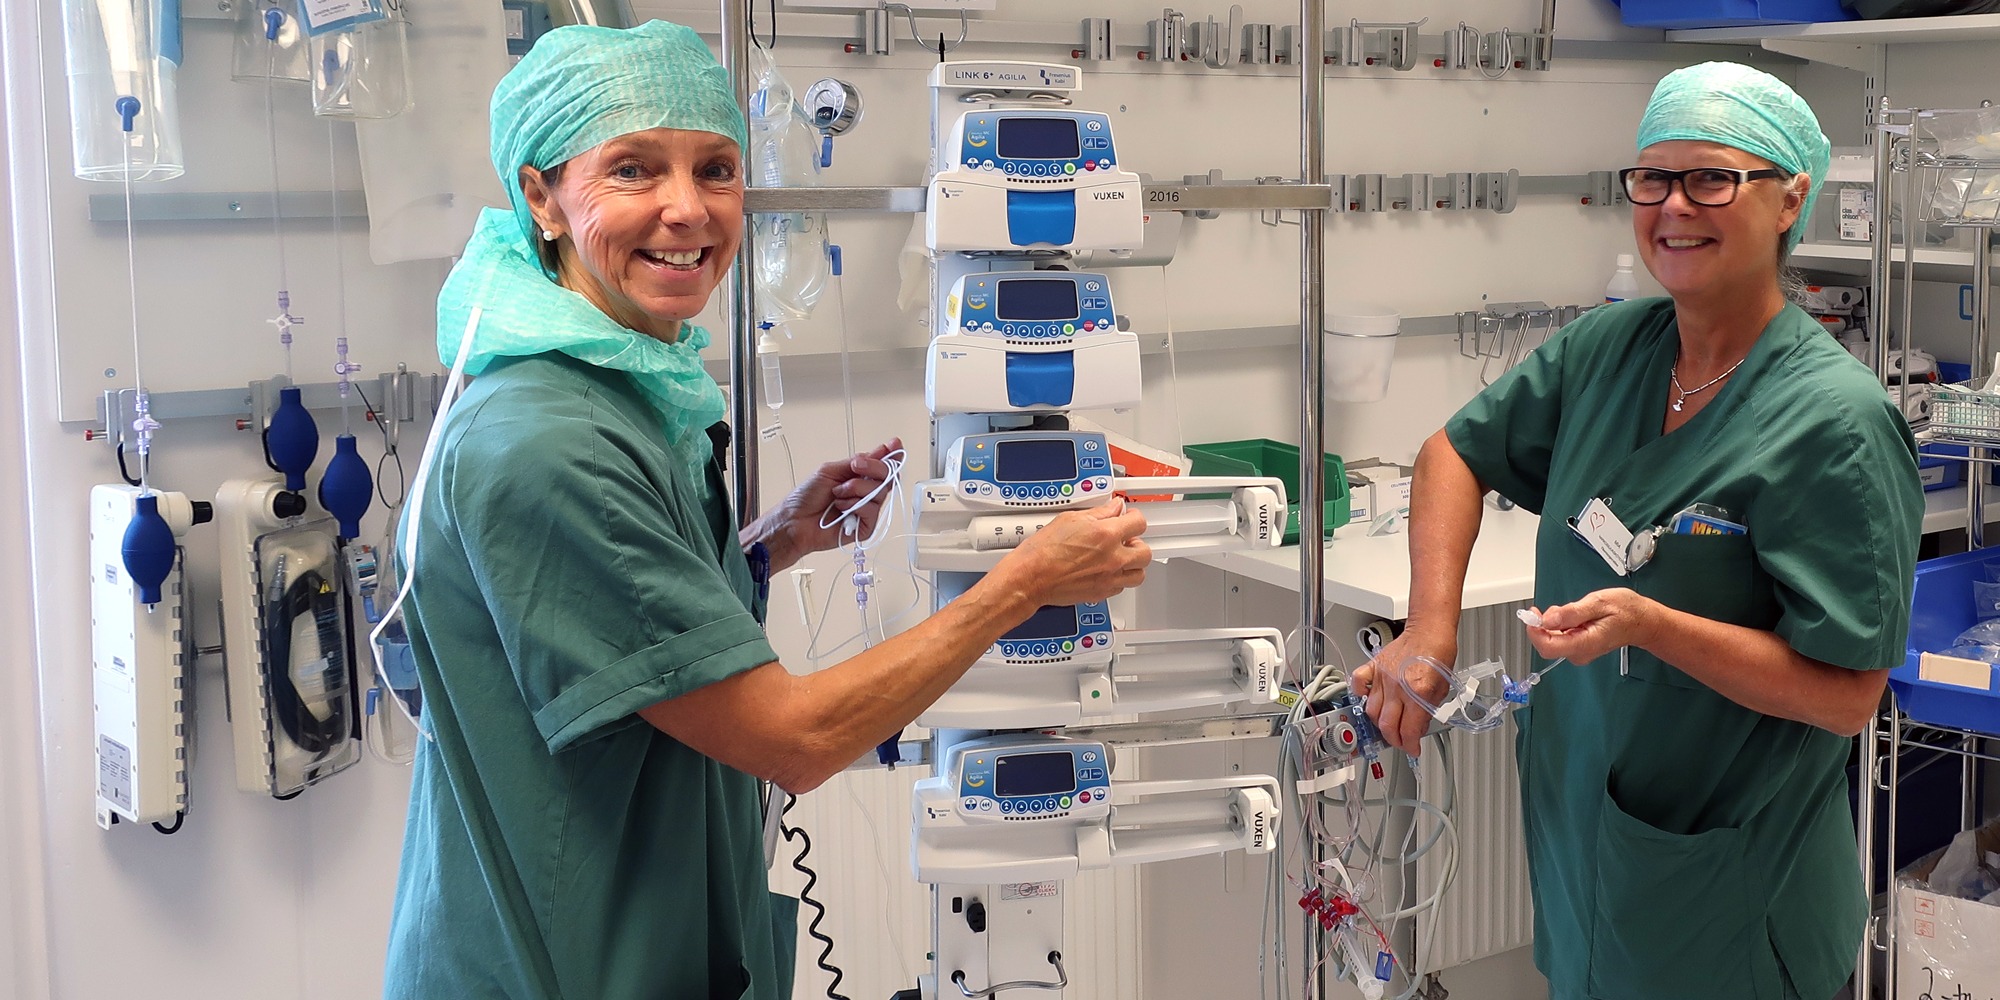 Marika Hasselby Ingmanson och Mia Jensen, i gröna operationskläder, står mitt emot varandra och arbetar med n uppsättning läkemedelspumpar i ett ställ.